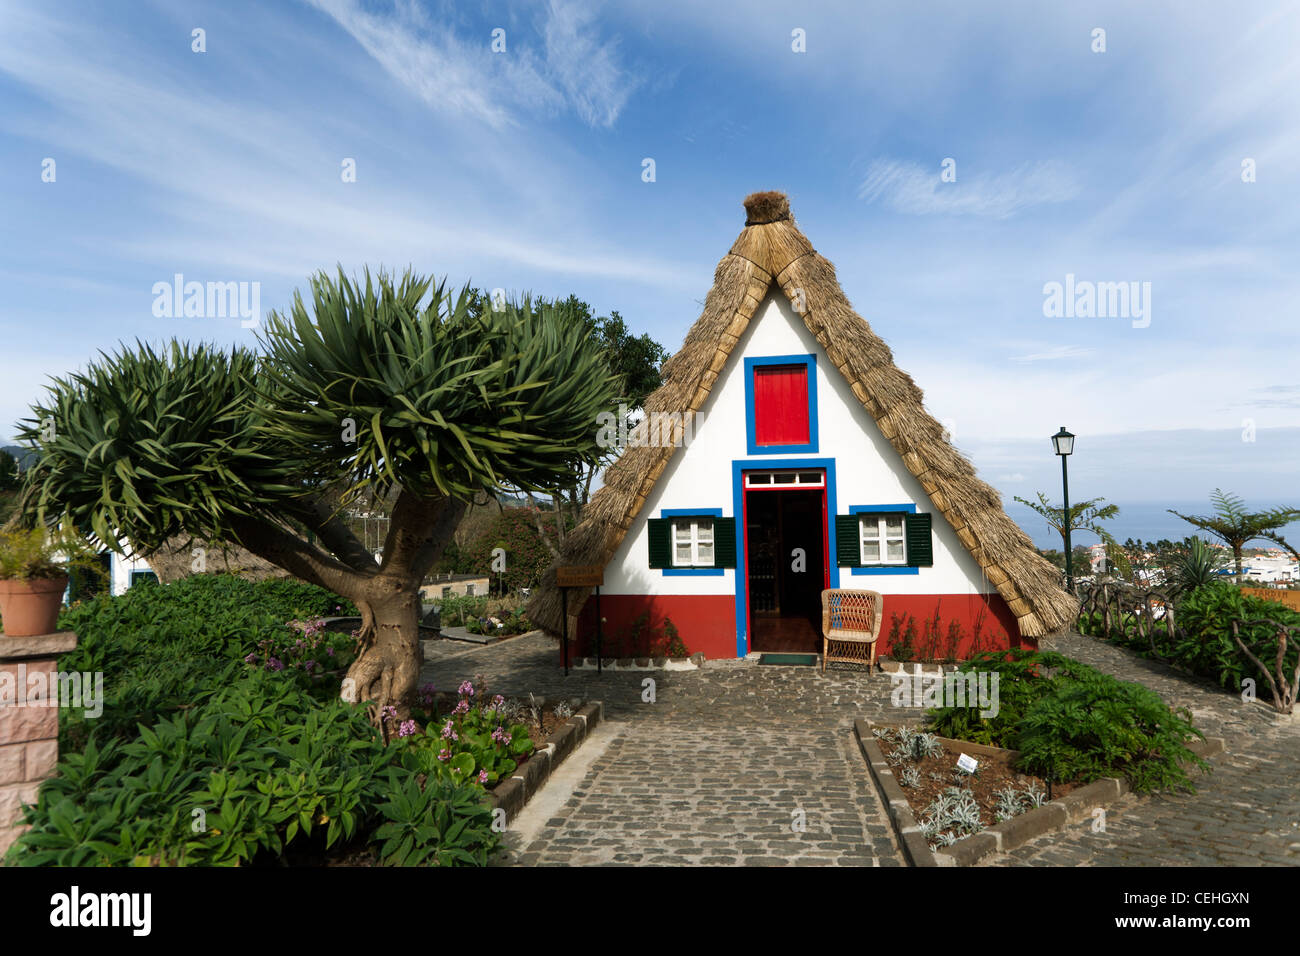 Maison au toit de chaume traditionnel, Santana, Madère Banque D'Images